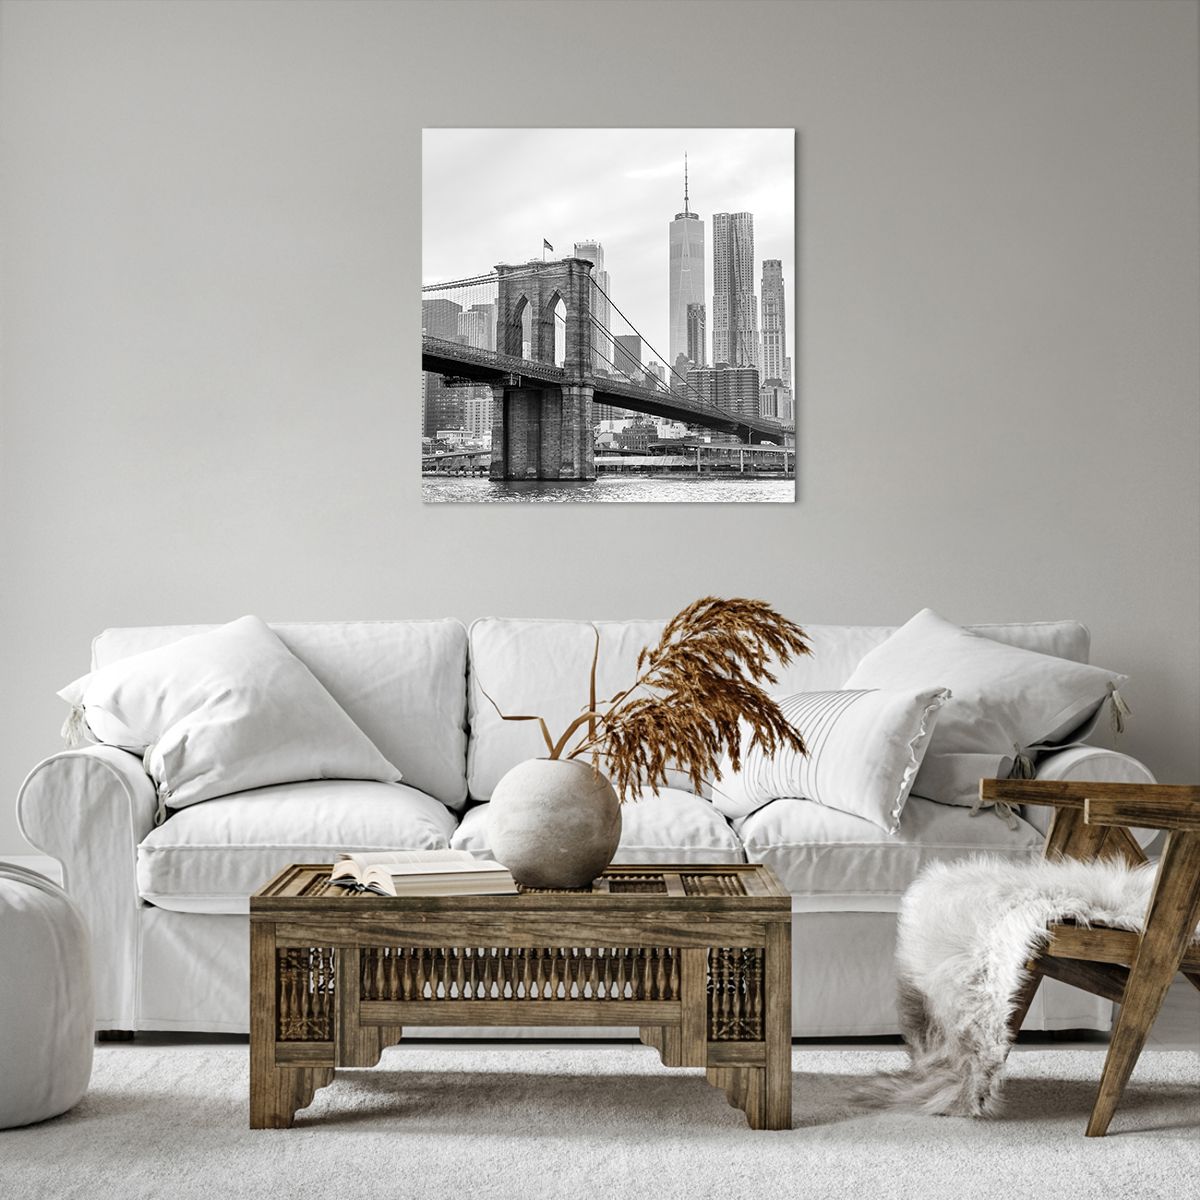 Obrazy na płótnie Nowy Jork, Obrazy na płótnie Most Brookliński, Obrazy na płótnie Manhattan, Obrazy na płótnie Architektura, Obrazy na płótnie Miasto 